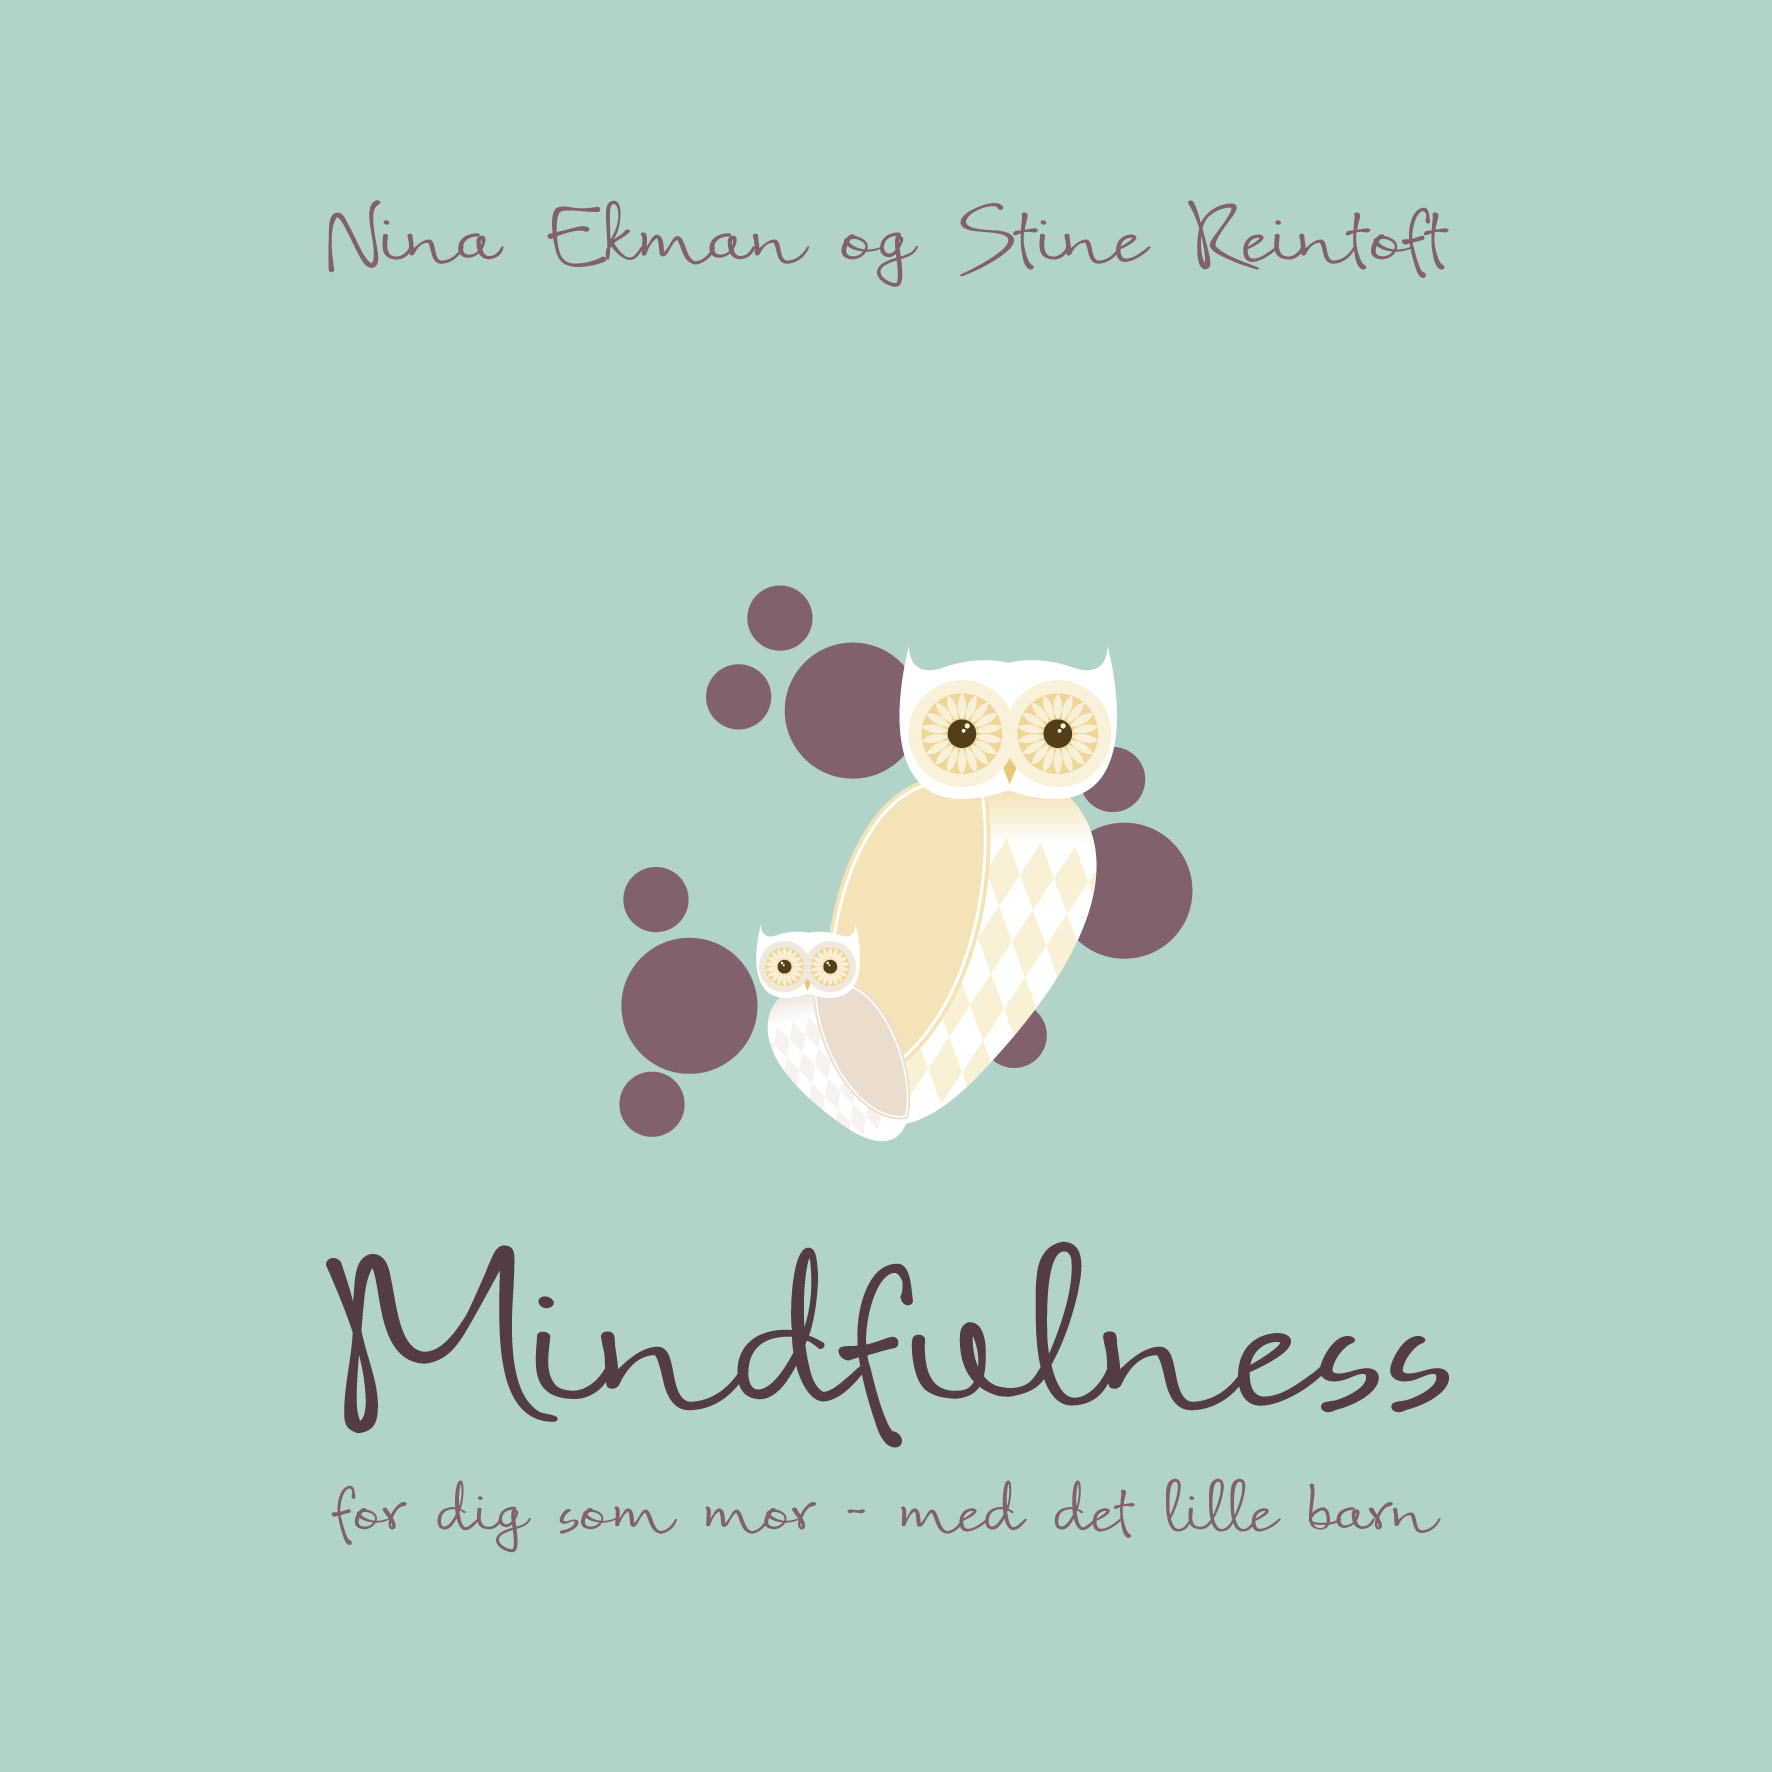 Mindfulness for dig som mor med det lille barn - E-bog